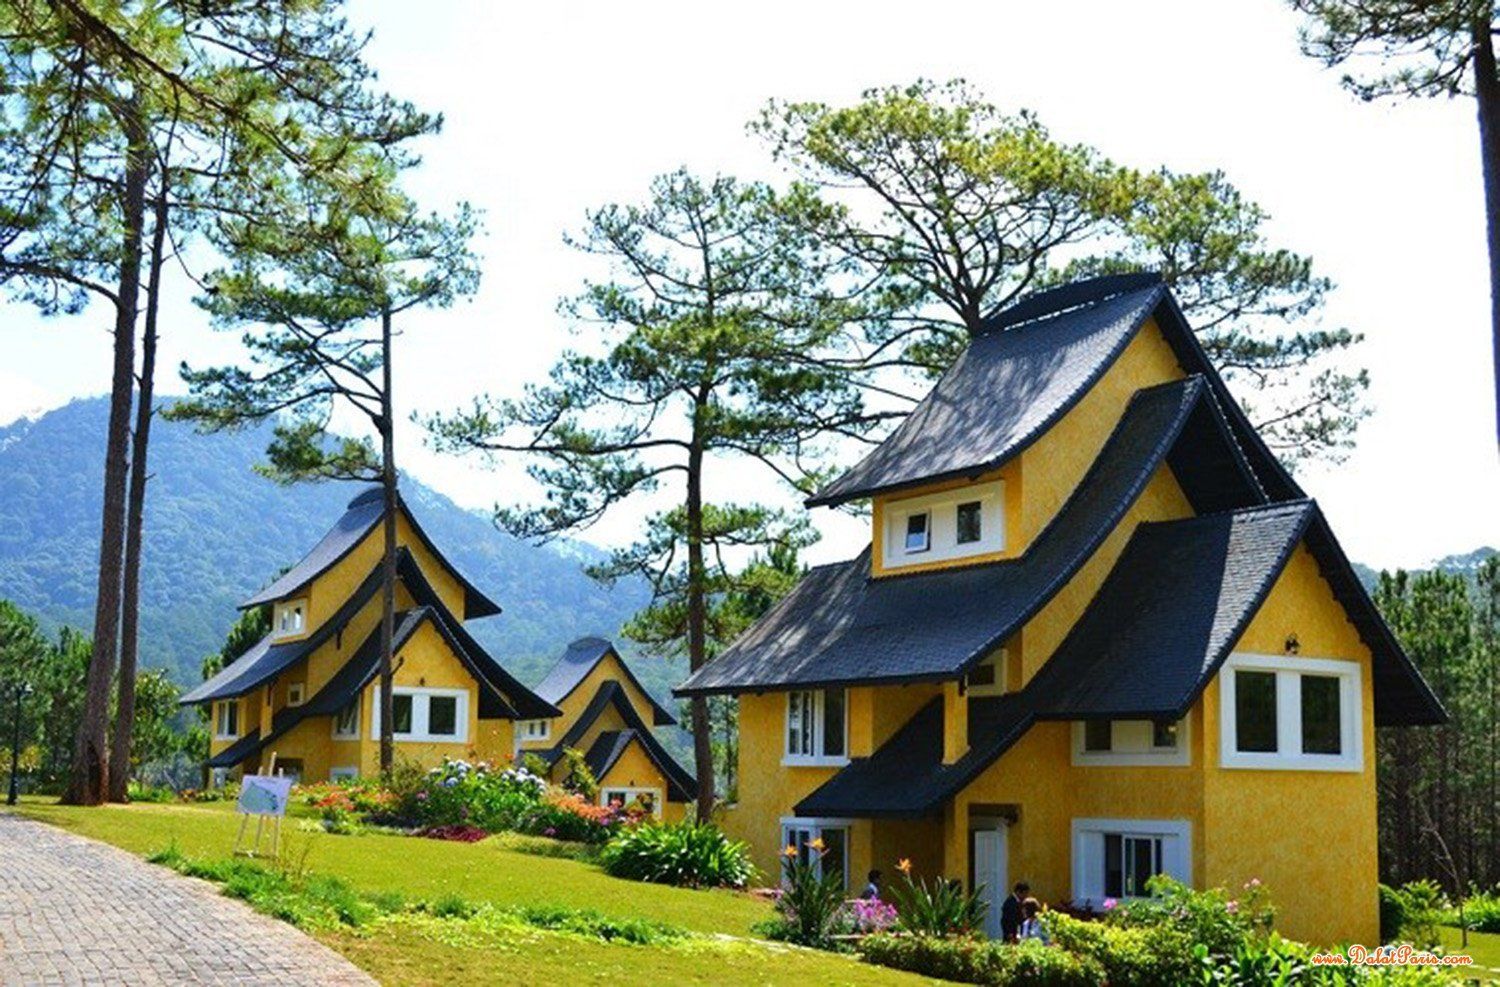 Đất nền Biệt thự Đường Thi Sách khu vực trung tâm TP Đà Lạt, gần bệnh viện đa khoa tỉnh Lâm Đồng, thích hợp an cư nghỉ dưỡng, kinh doanh khách sạn, giá tốt đầu tư